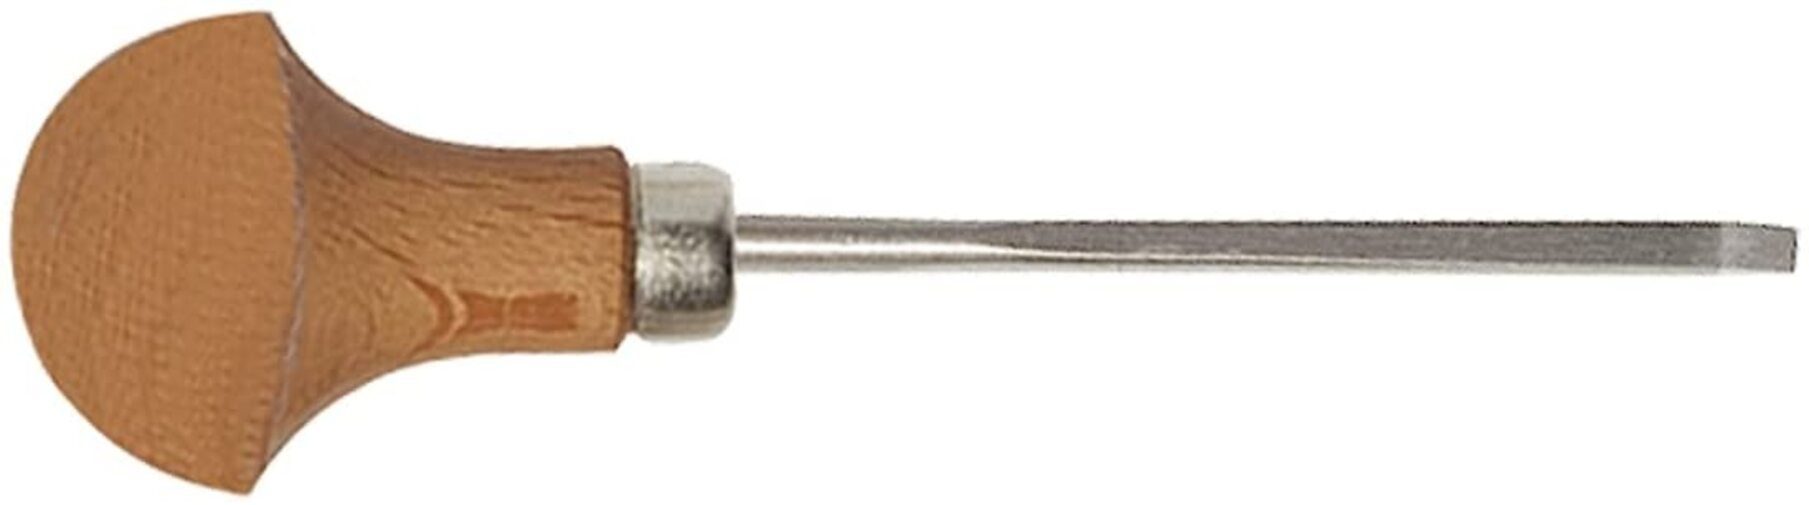 Stubai Stechbeitel STUBAI Micro Stechbeitel Form 3 3 mm